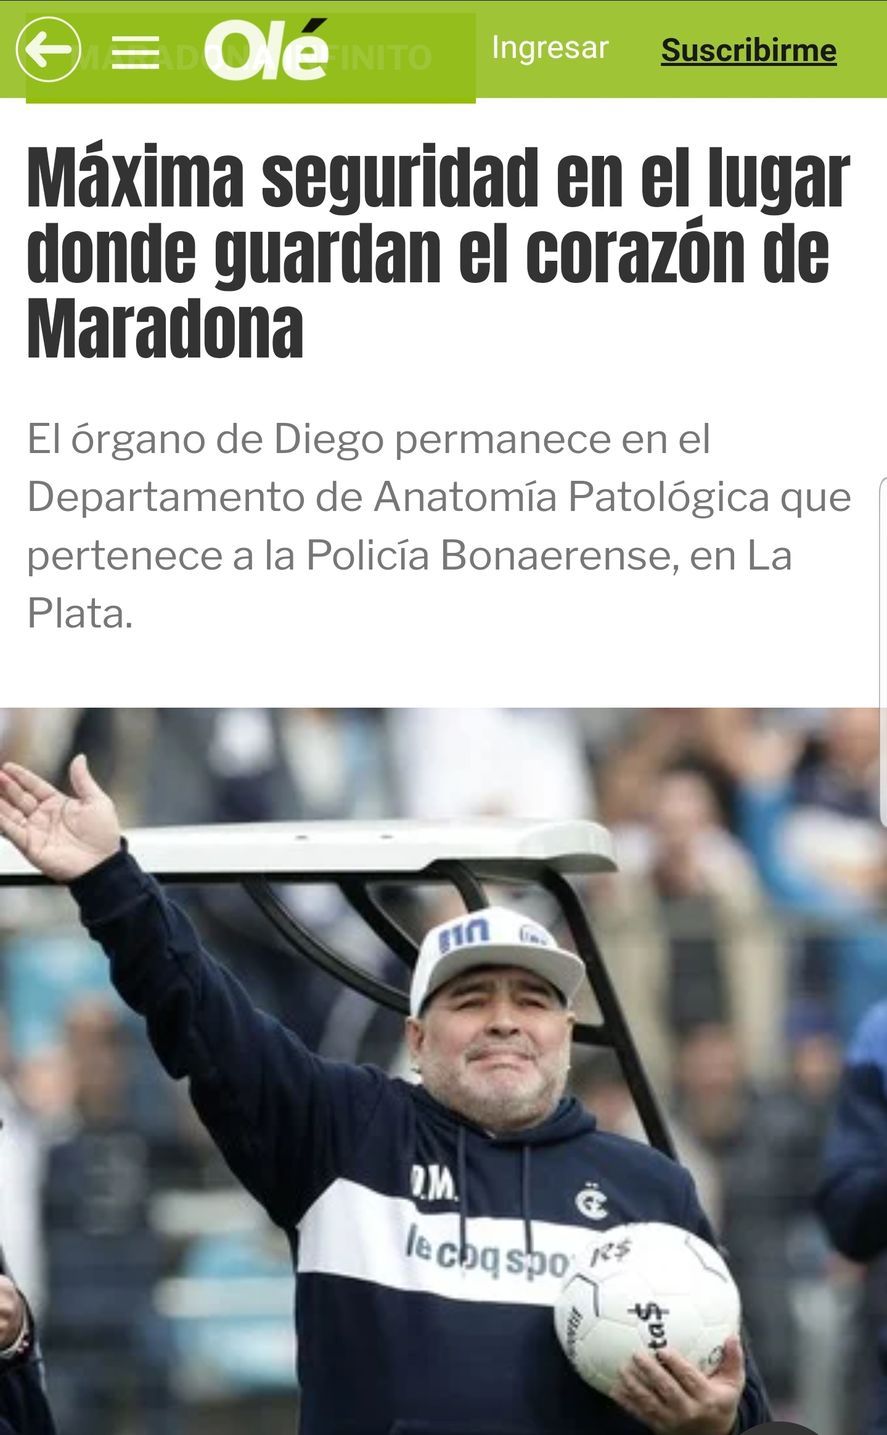 El Grupo Clarín y sus medios acusaron a Gimnasia de querer robar el corazón de Maradona sin ningún fundamento.